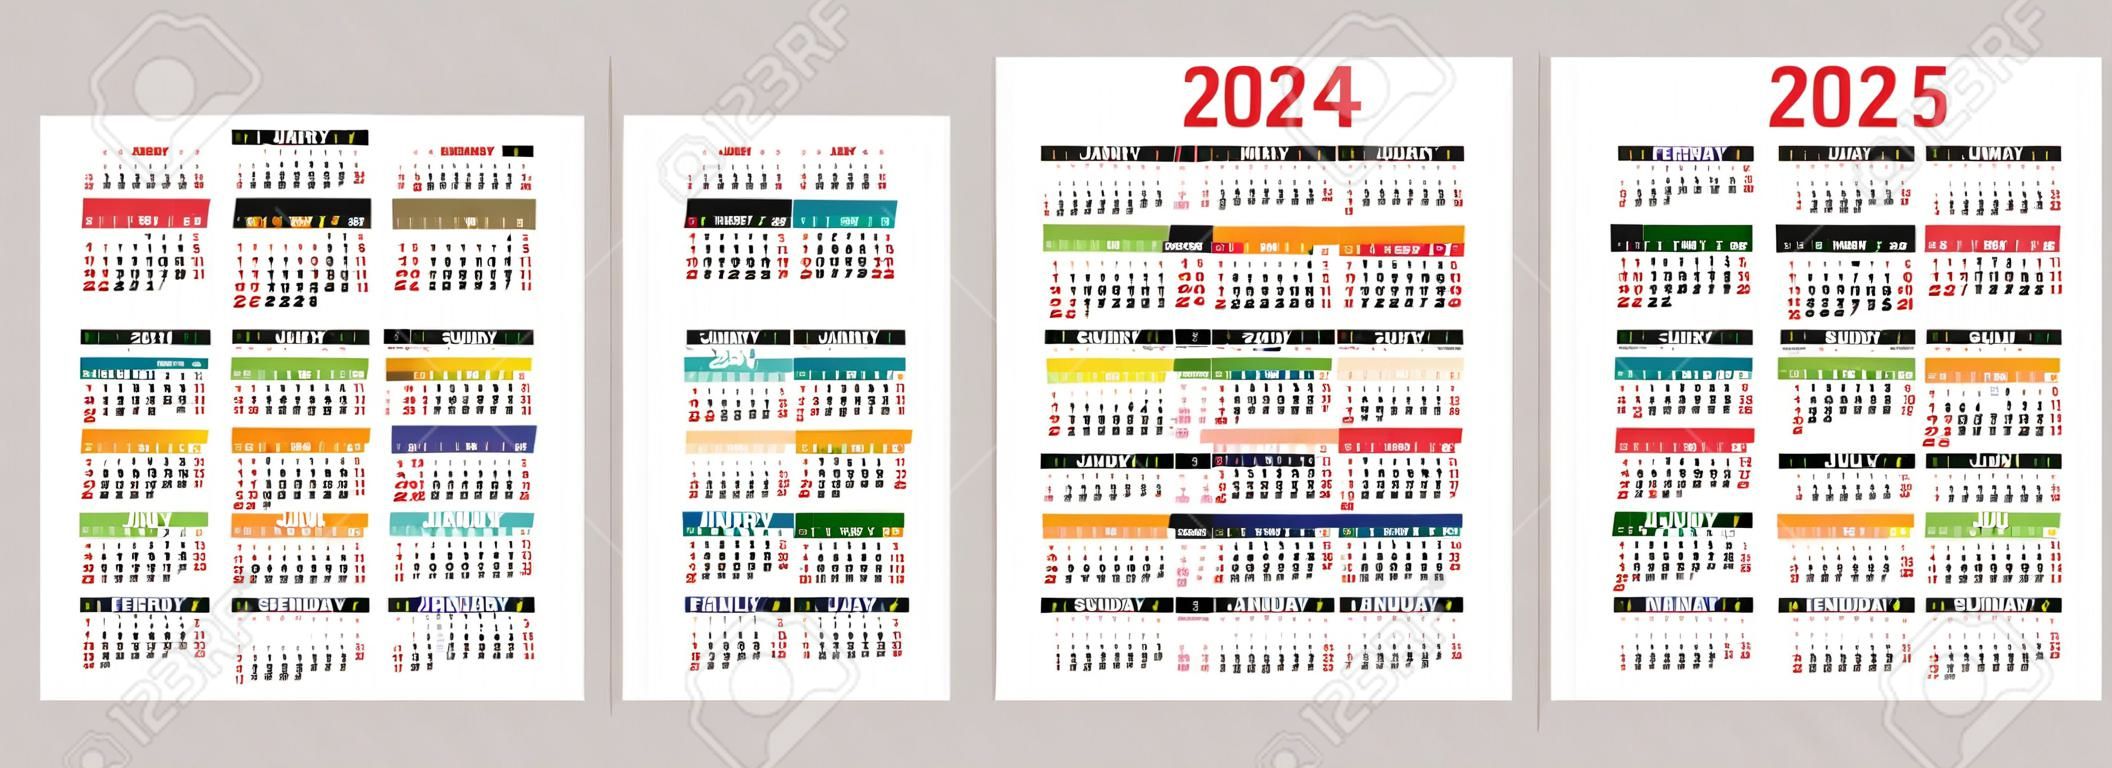 Calendrier coloré 2023, 2024, 2025 et 2026. conception de calendrier de poche de vecteur de couleur. la semaine commence le dimanche. janvier, février, mars, avril, mai, juin, juillet, août, septembre, octobre, novembre, décembre.